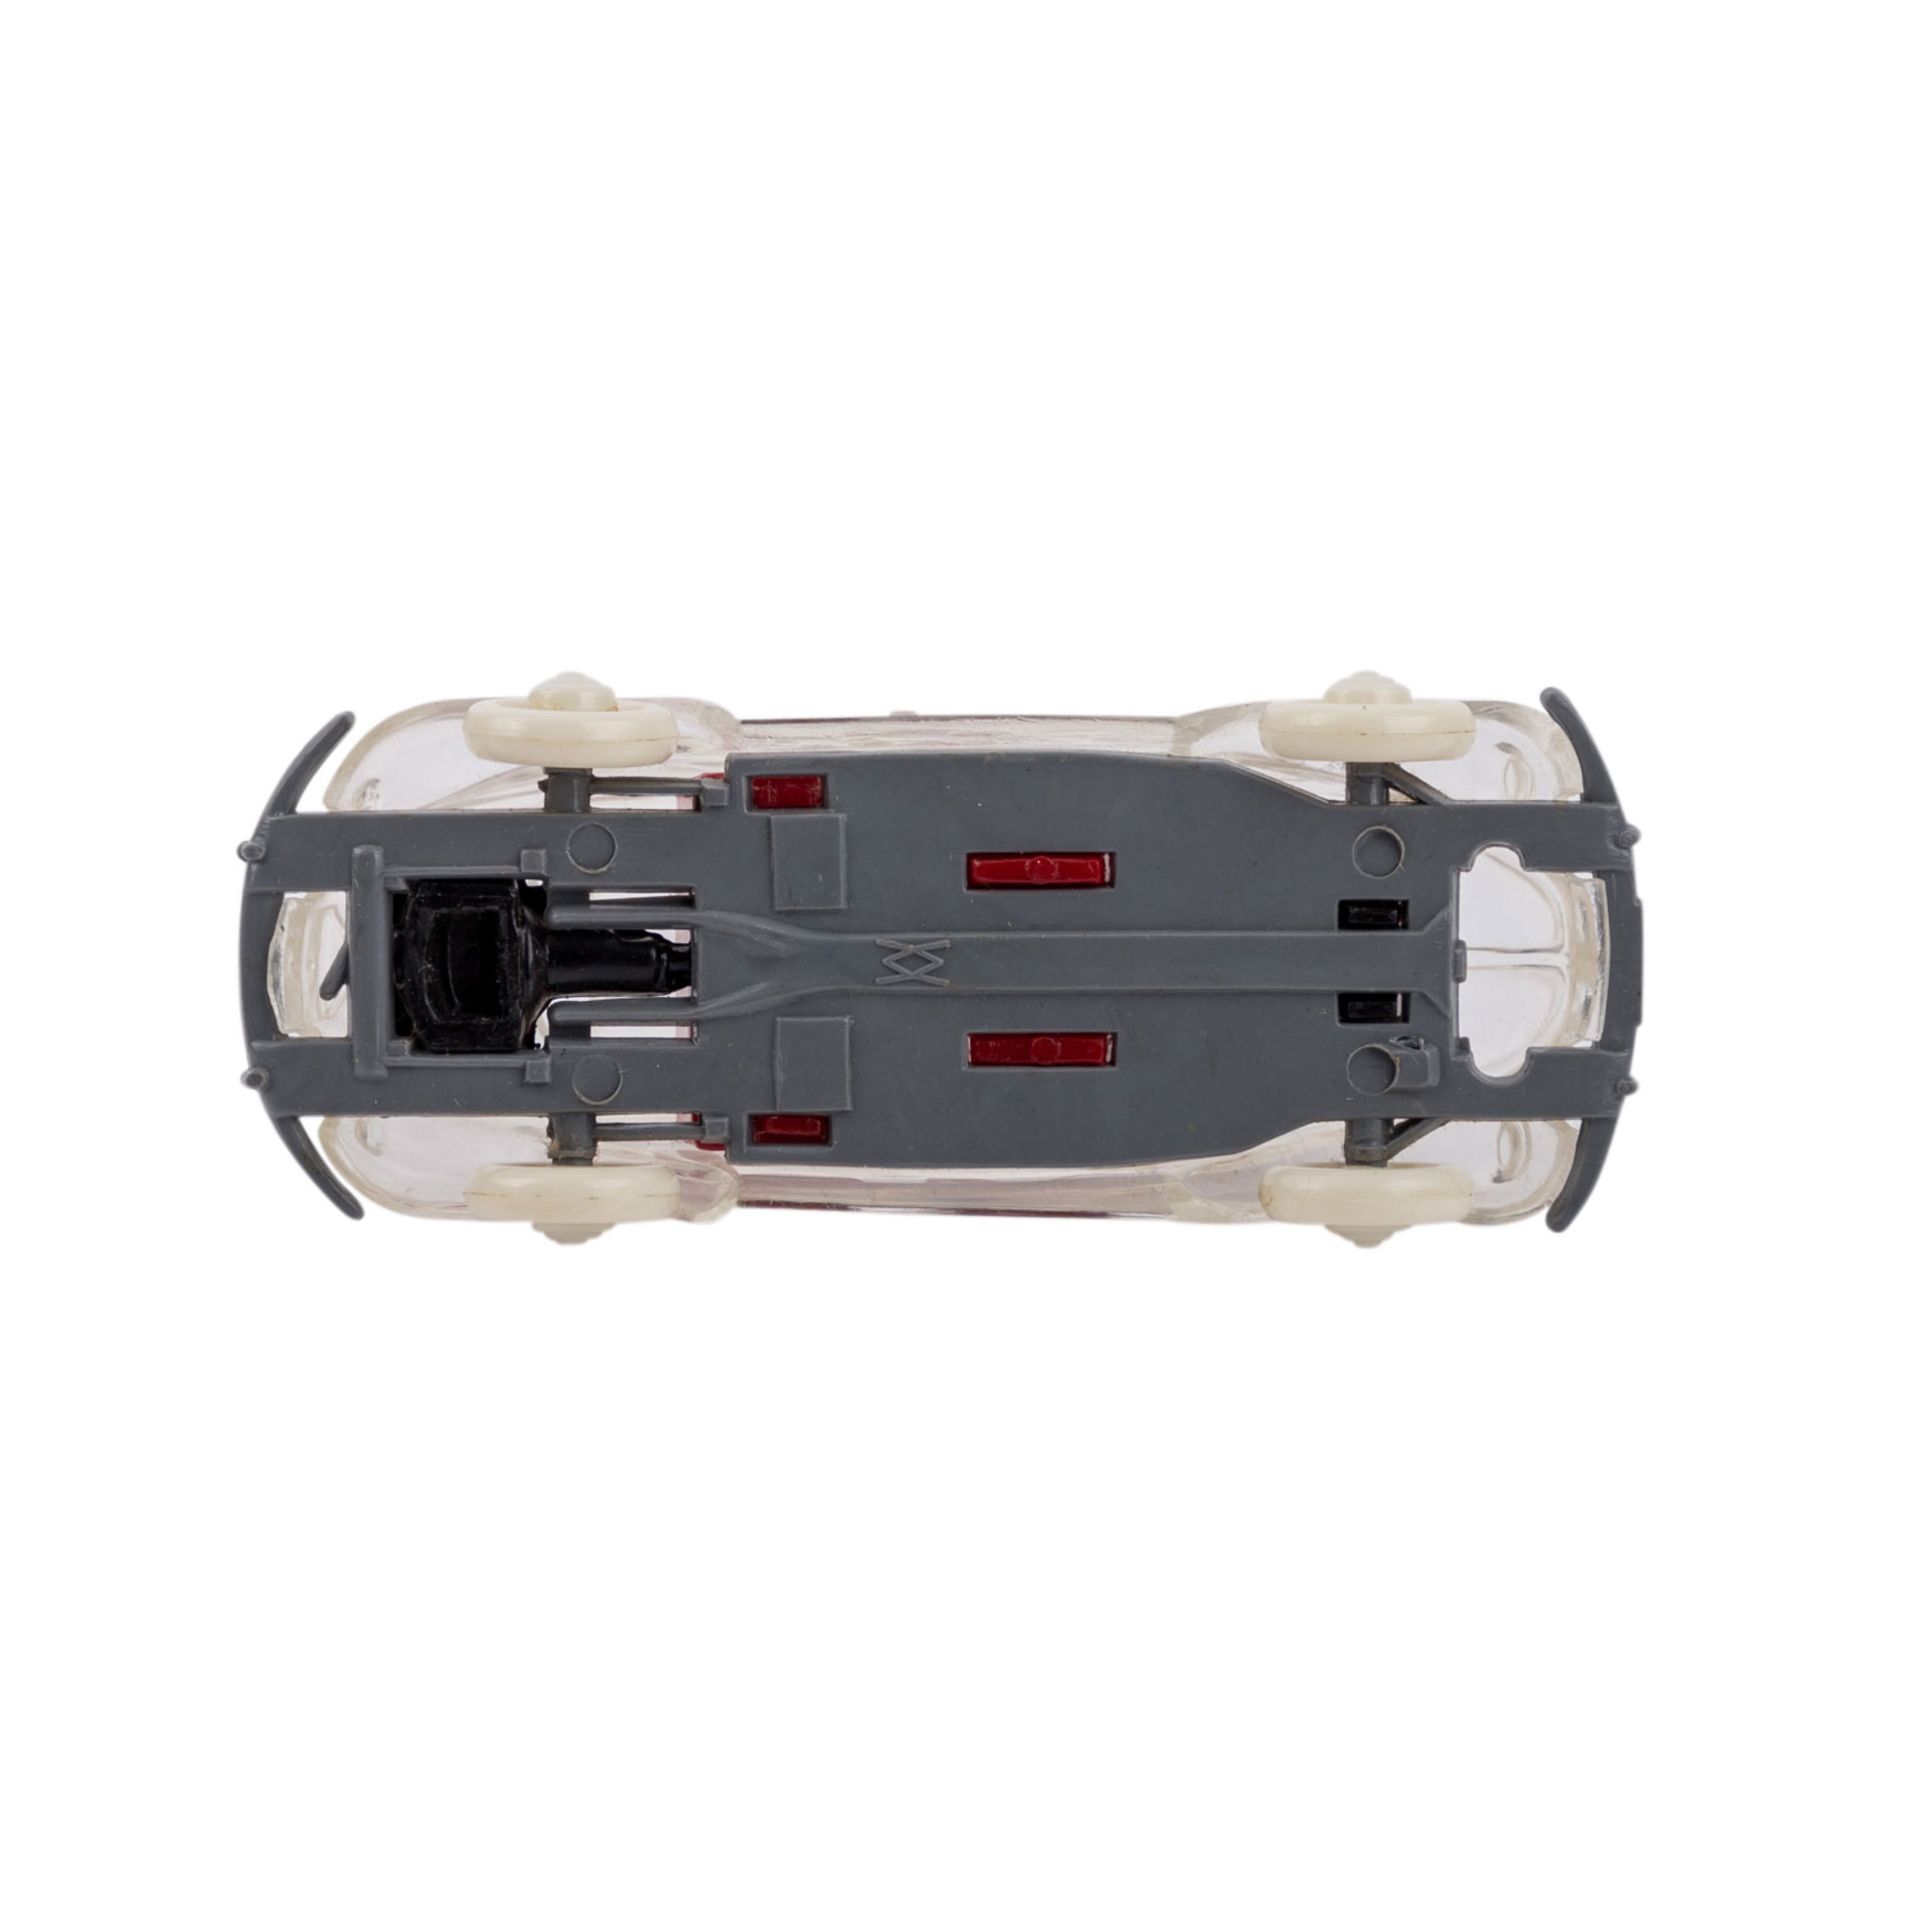 WIKING VW Käfer,transparentes Kunststoff-Gehäuse, graues Chassis, rote Sitze, Brezelfenster. Im - Bild 3 aus 3